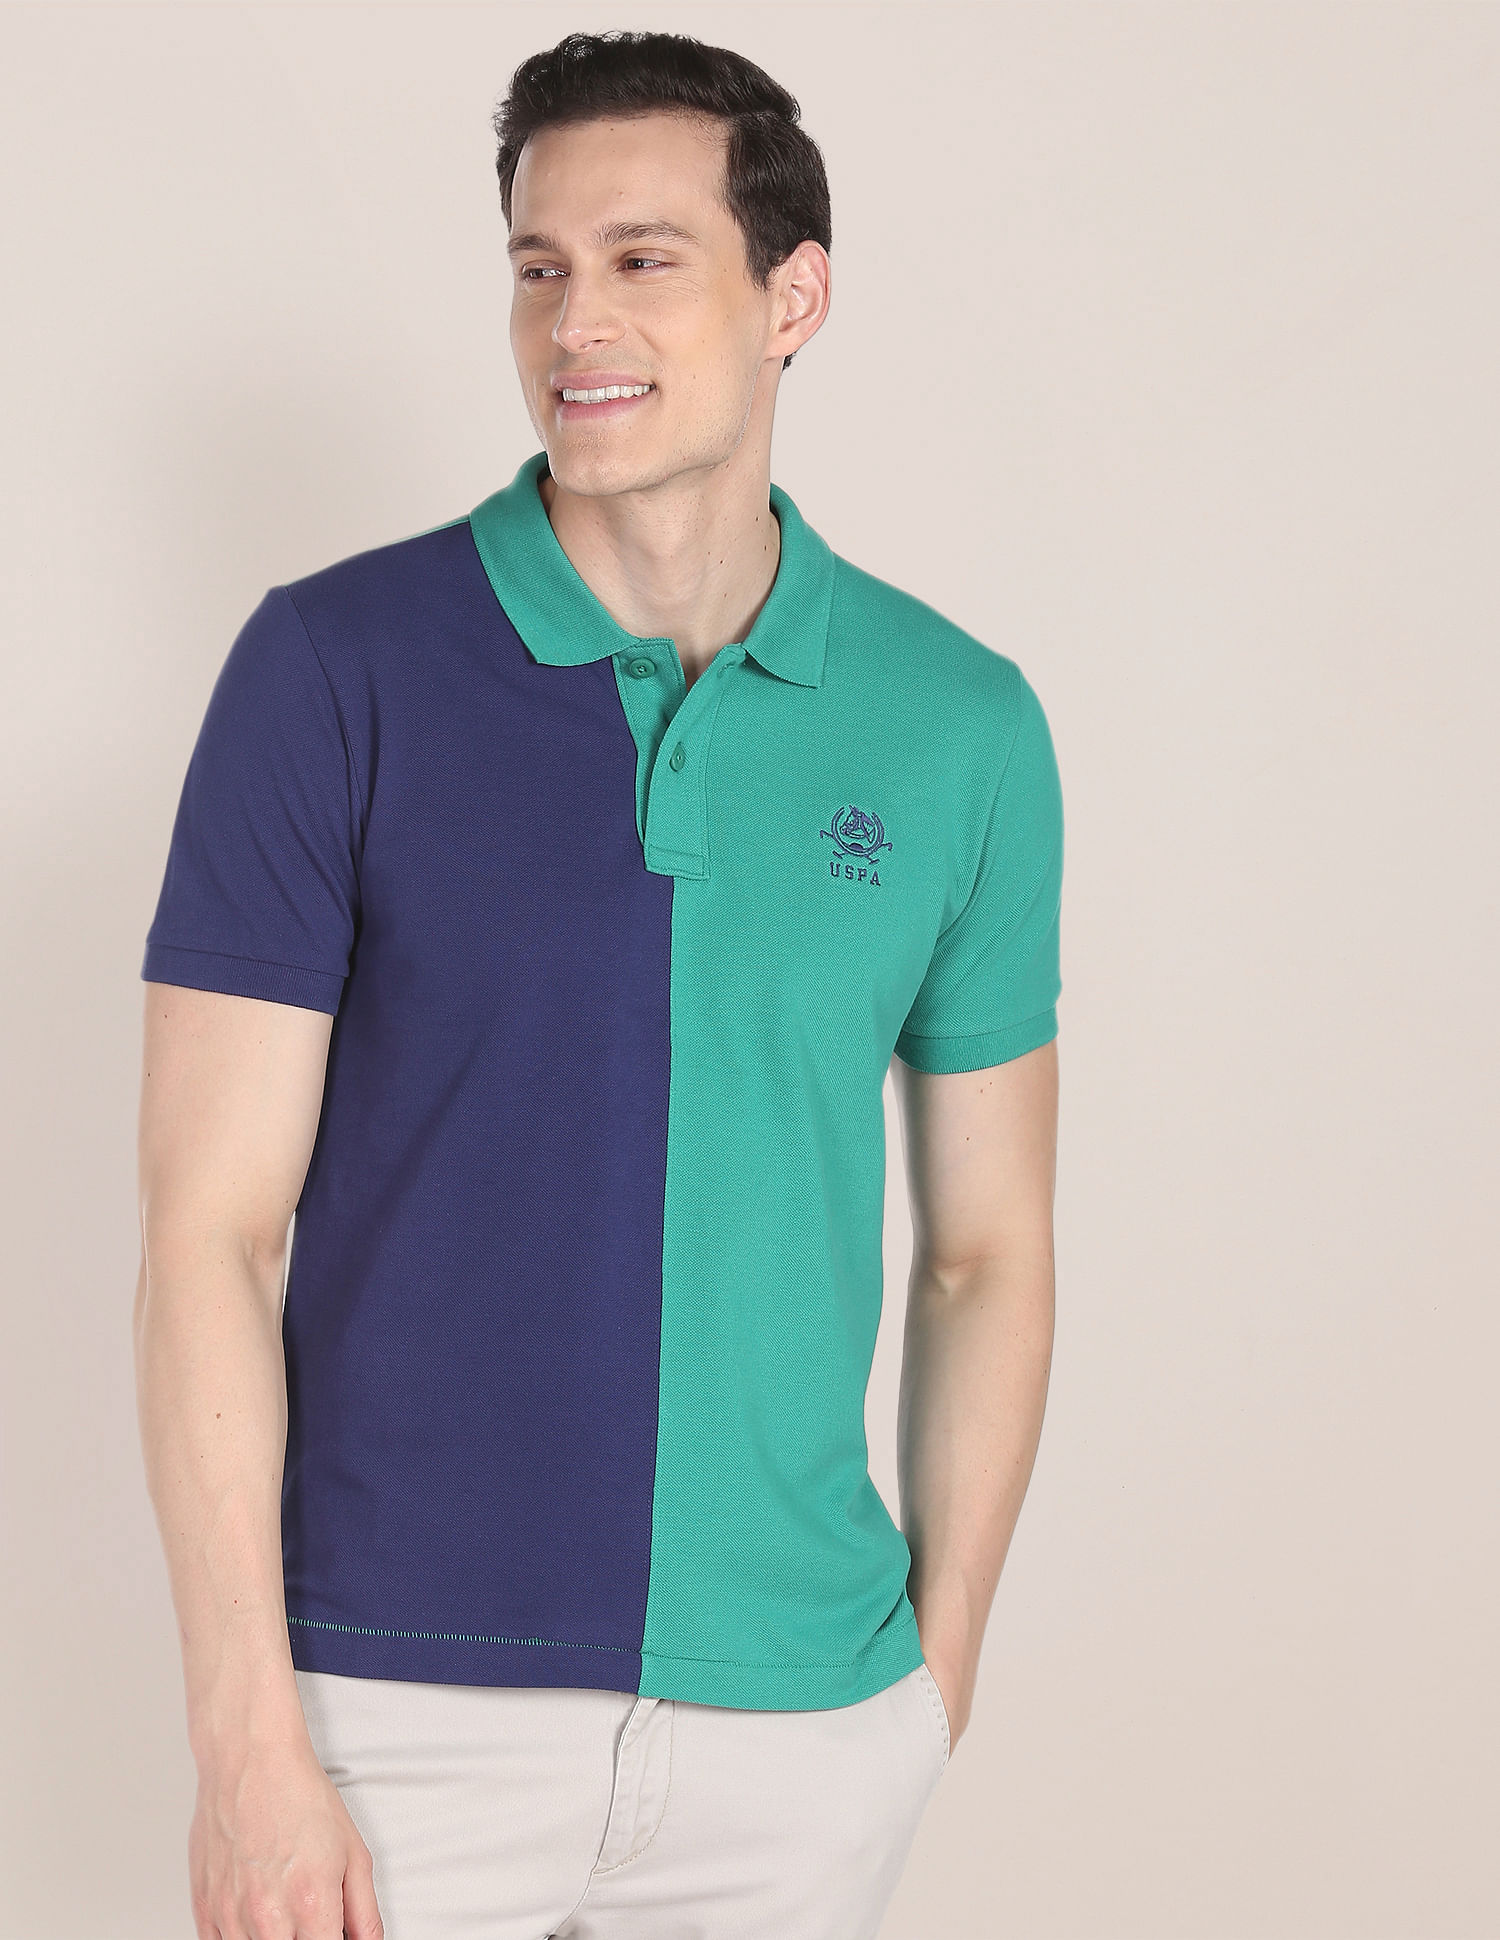 U.S. Polo Assn. Colour Block Cotton Polo Shirt, Green (S)